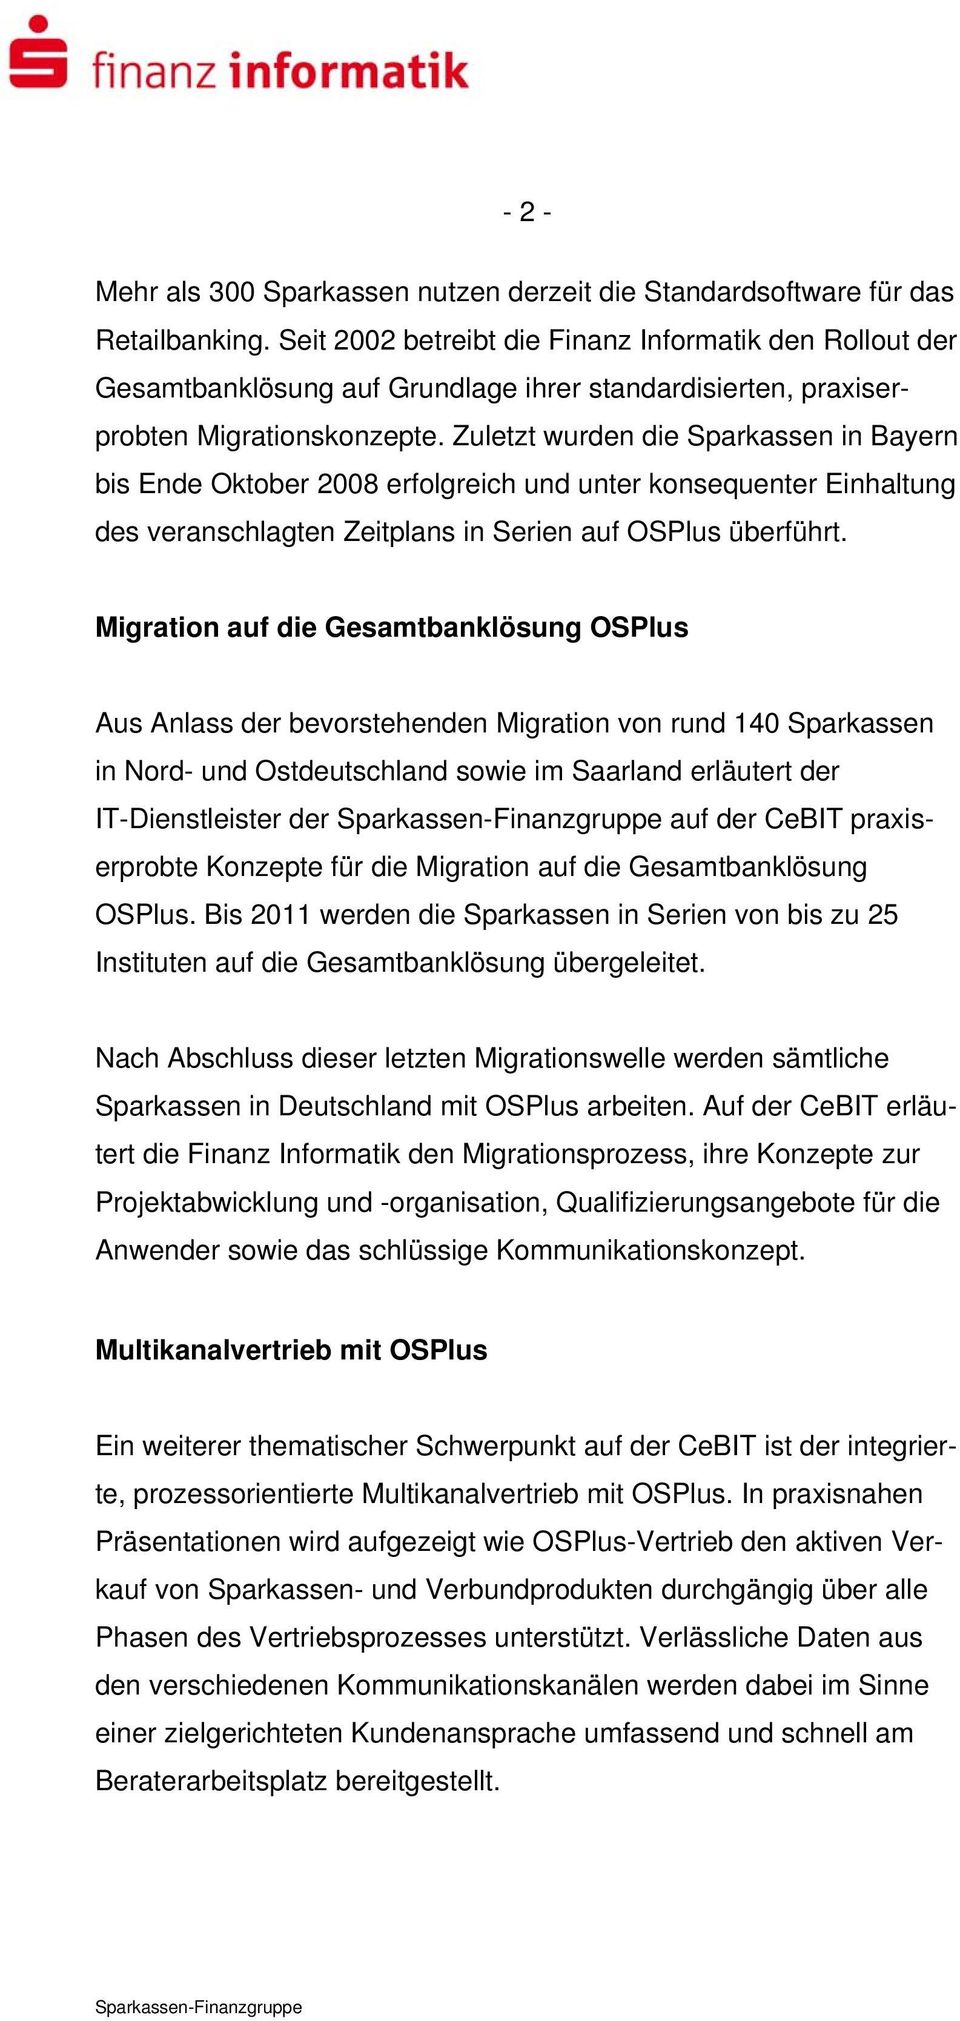 Zuletzt wurden die Sparkassen in Bayern bis Ende Oktober 2008 erfolgreich und unter konsequenter Einhaltung des veranschlagten Zeitplans in Serien auf OSPlus überführt.